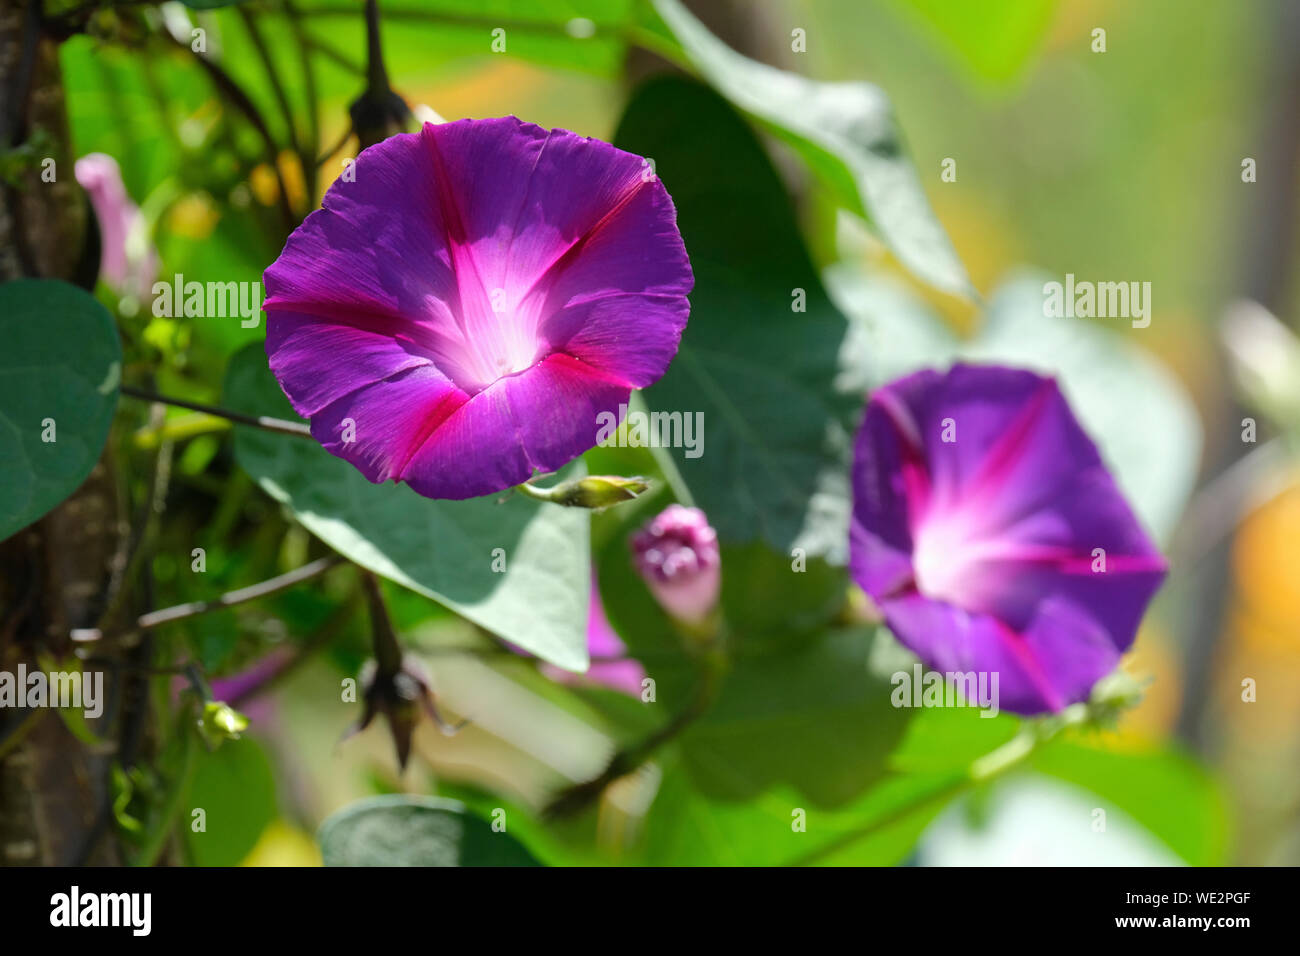 Close-up Blumen von ipomoea tricolor Kniola in Schwarz. Ipomoea purpurea, die gemeinsame Morgen - Herrlichkeit, hohen Morgen - Herrlichkeit oder lila morning glory. Stockfoto